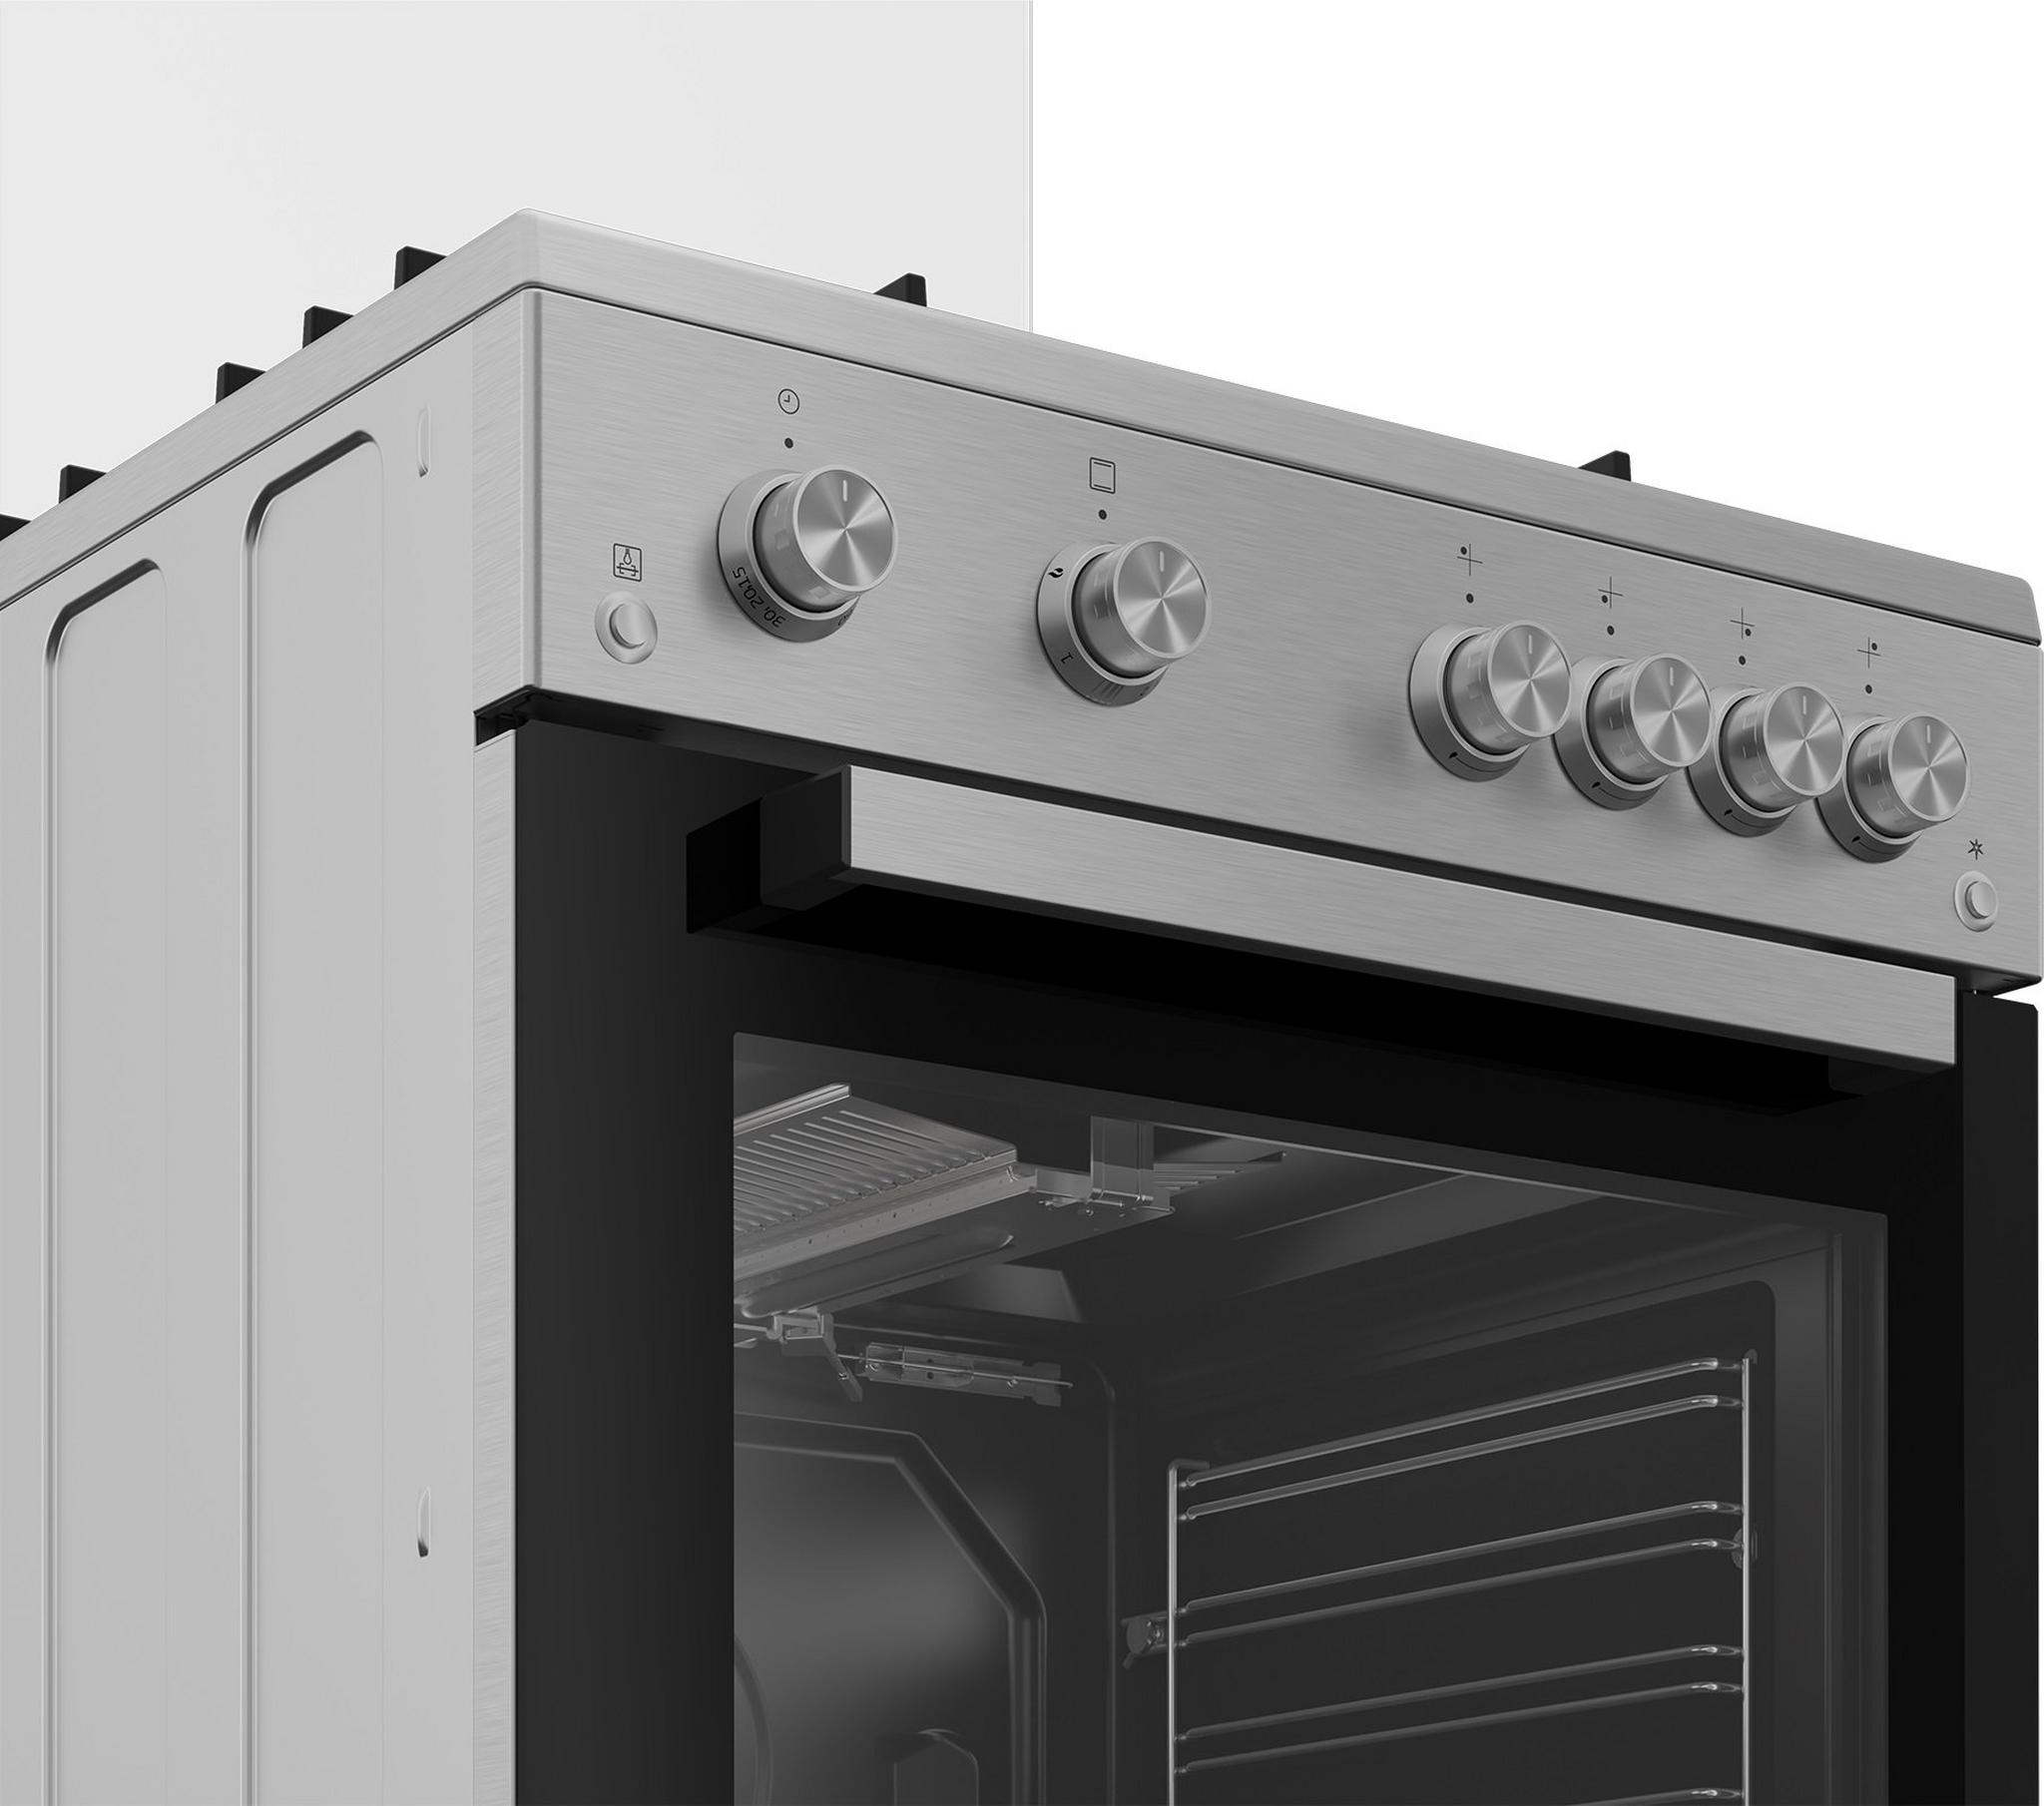 Beko 14.4 Cft Top Mount Refrigerator + 7kg Front Load Washing Machine + Beko 60X60 Full Gas Cooking Range